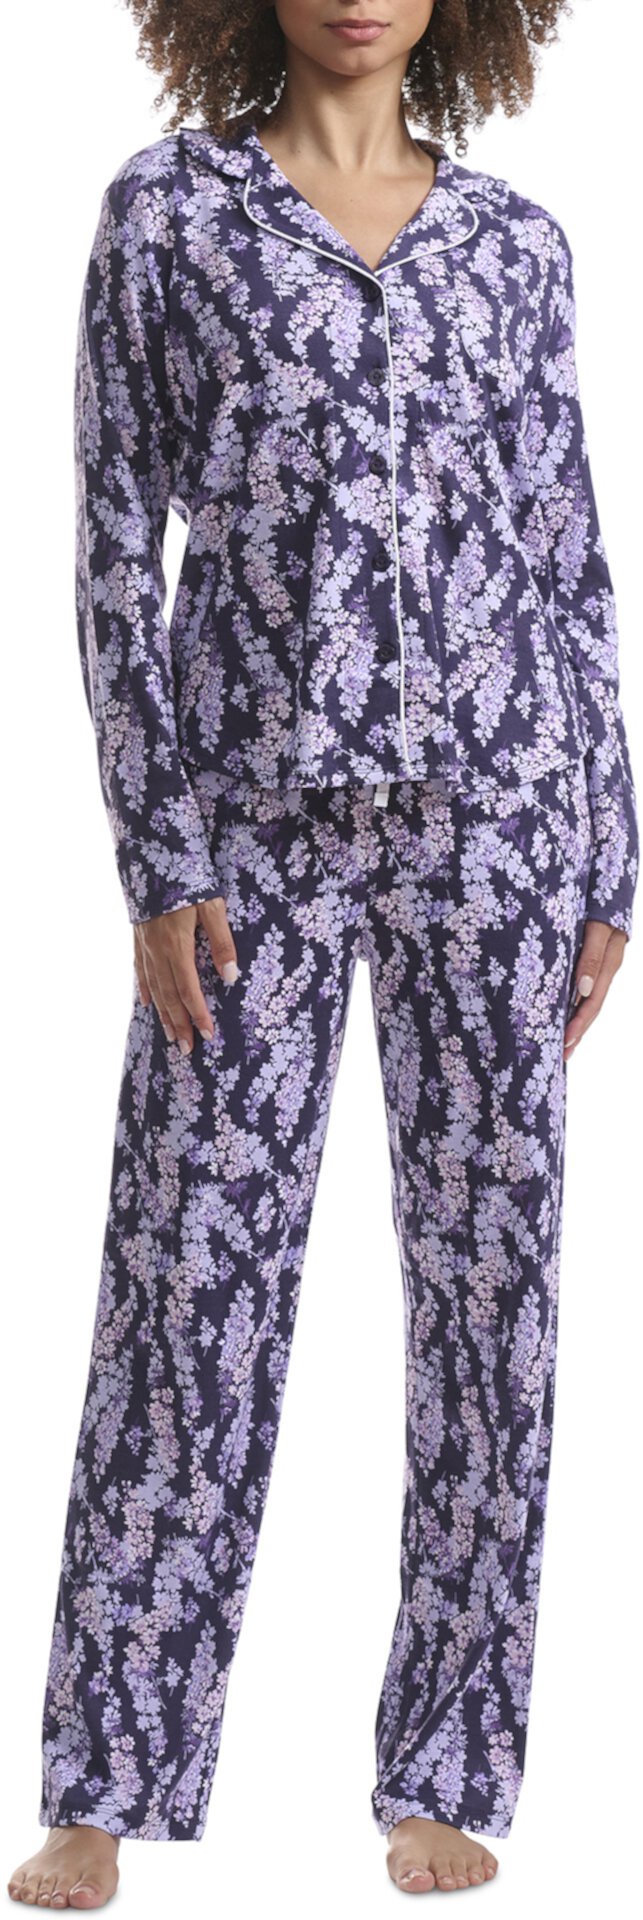 Пижамный комплект с воротником-стойкой и цветочным принтом Girlfriend Karen Neuburger